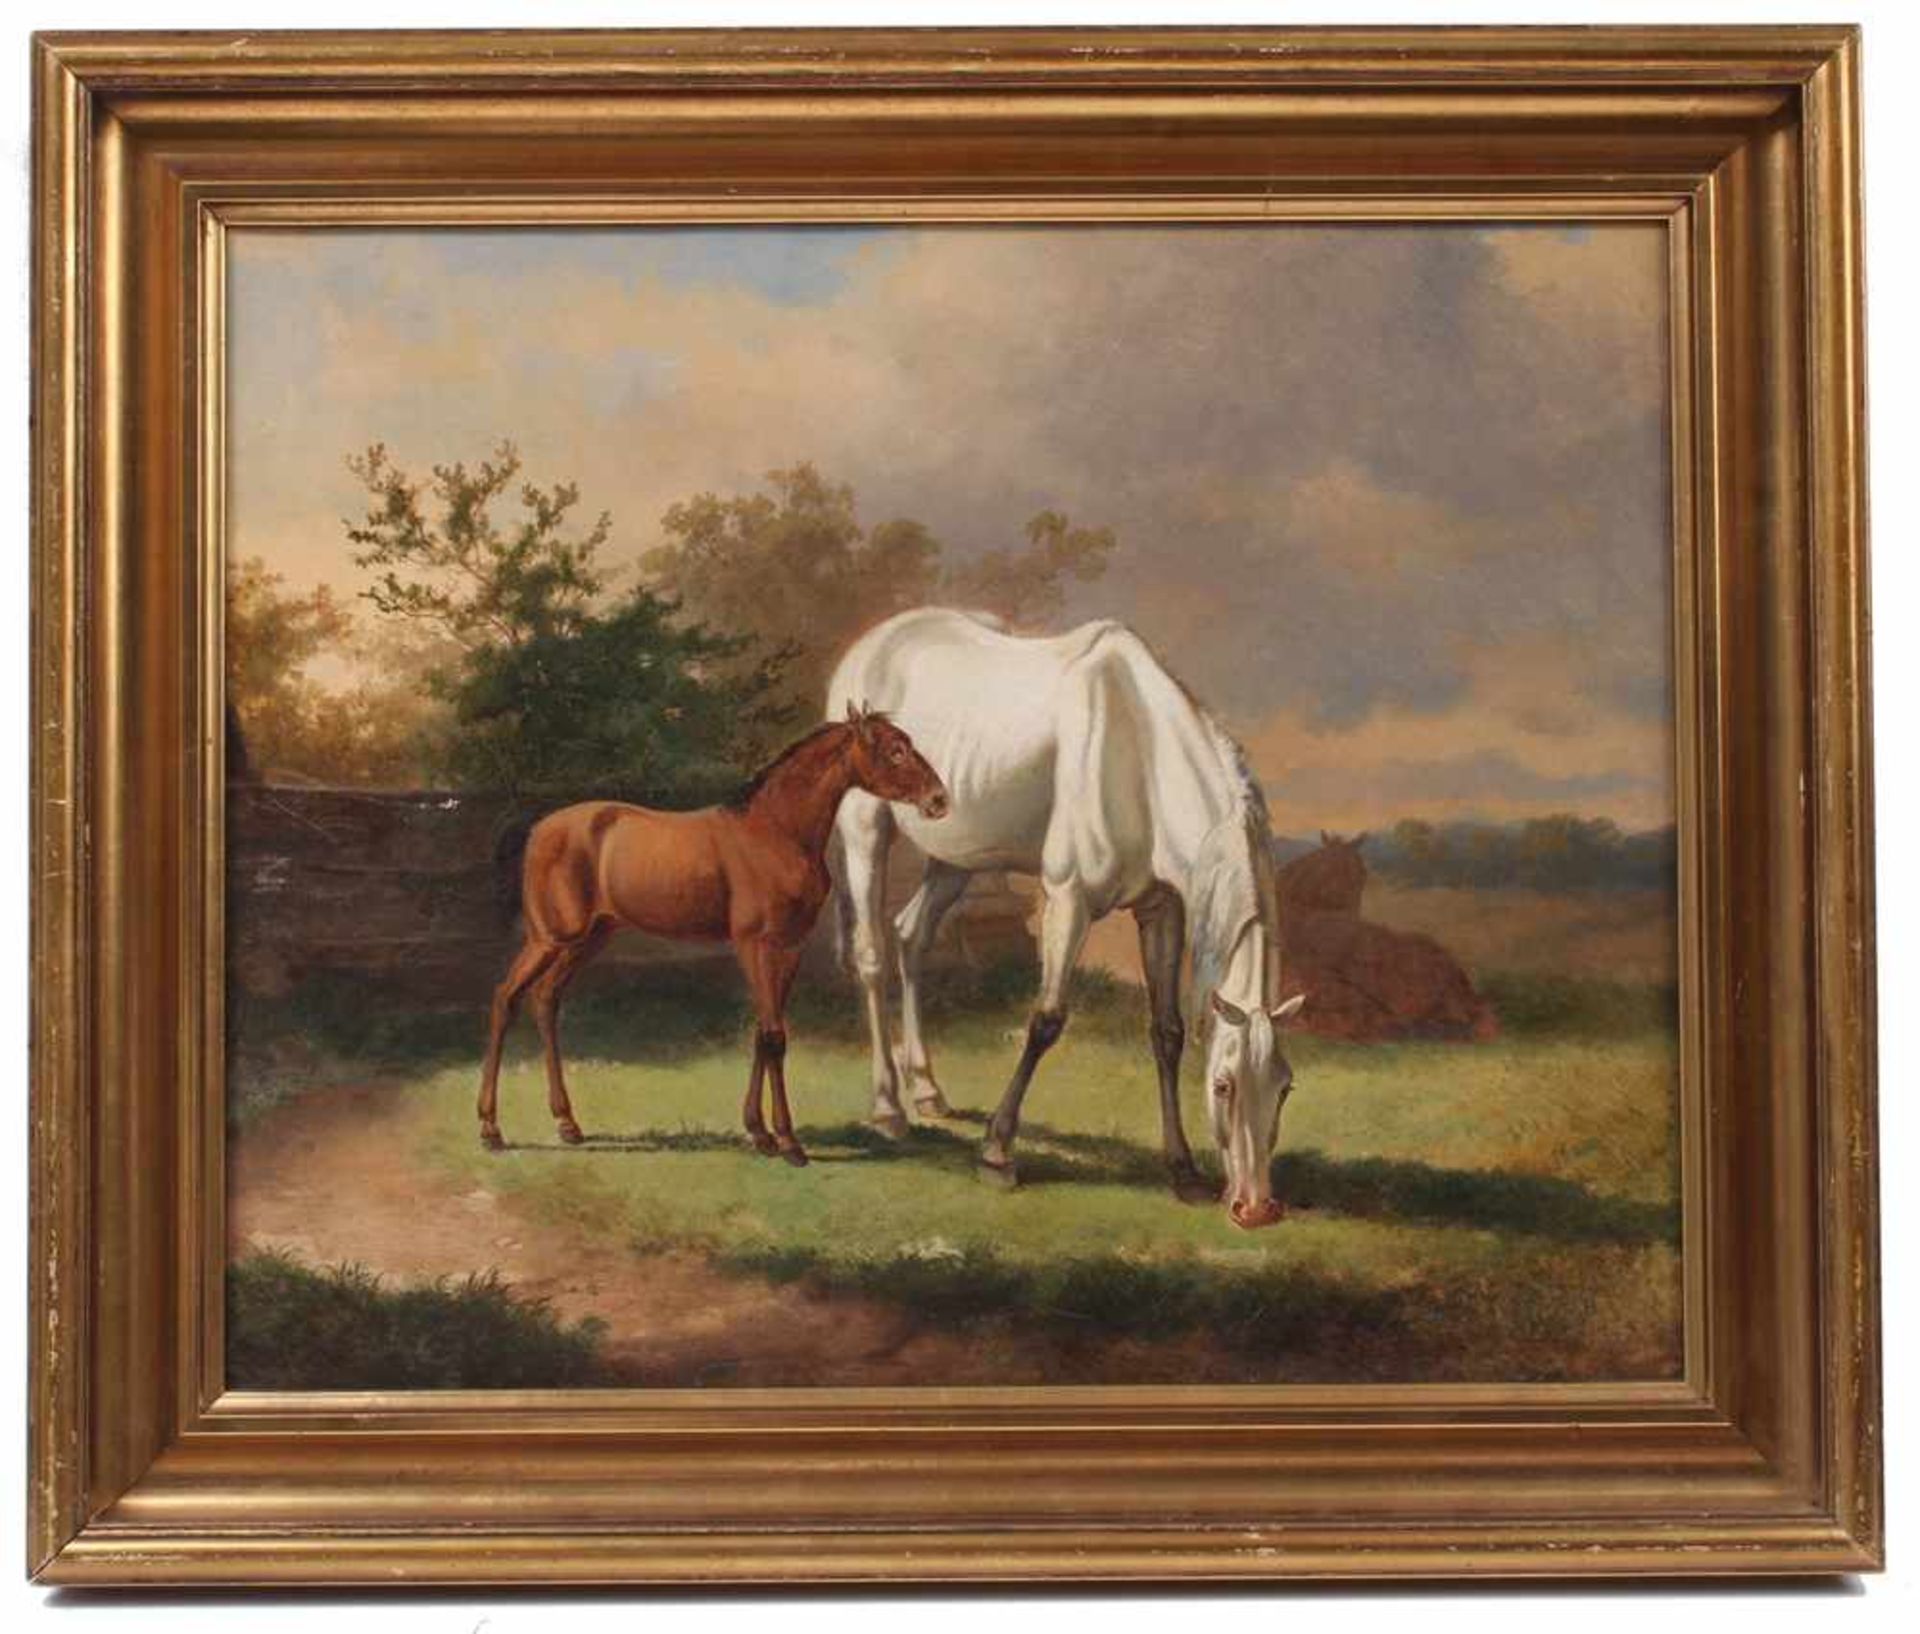 Unbekannt. 19./20. Jh.Pferde auf der Weide. Öl/Lwd. H: 35 x 49 cm. Rahmen H: 43 x 52 cm. - Image 2 of 2